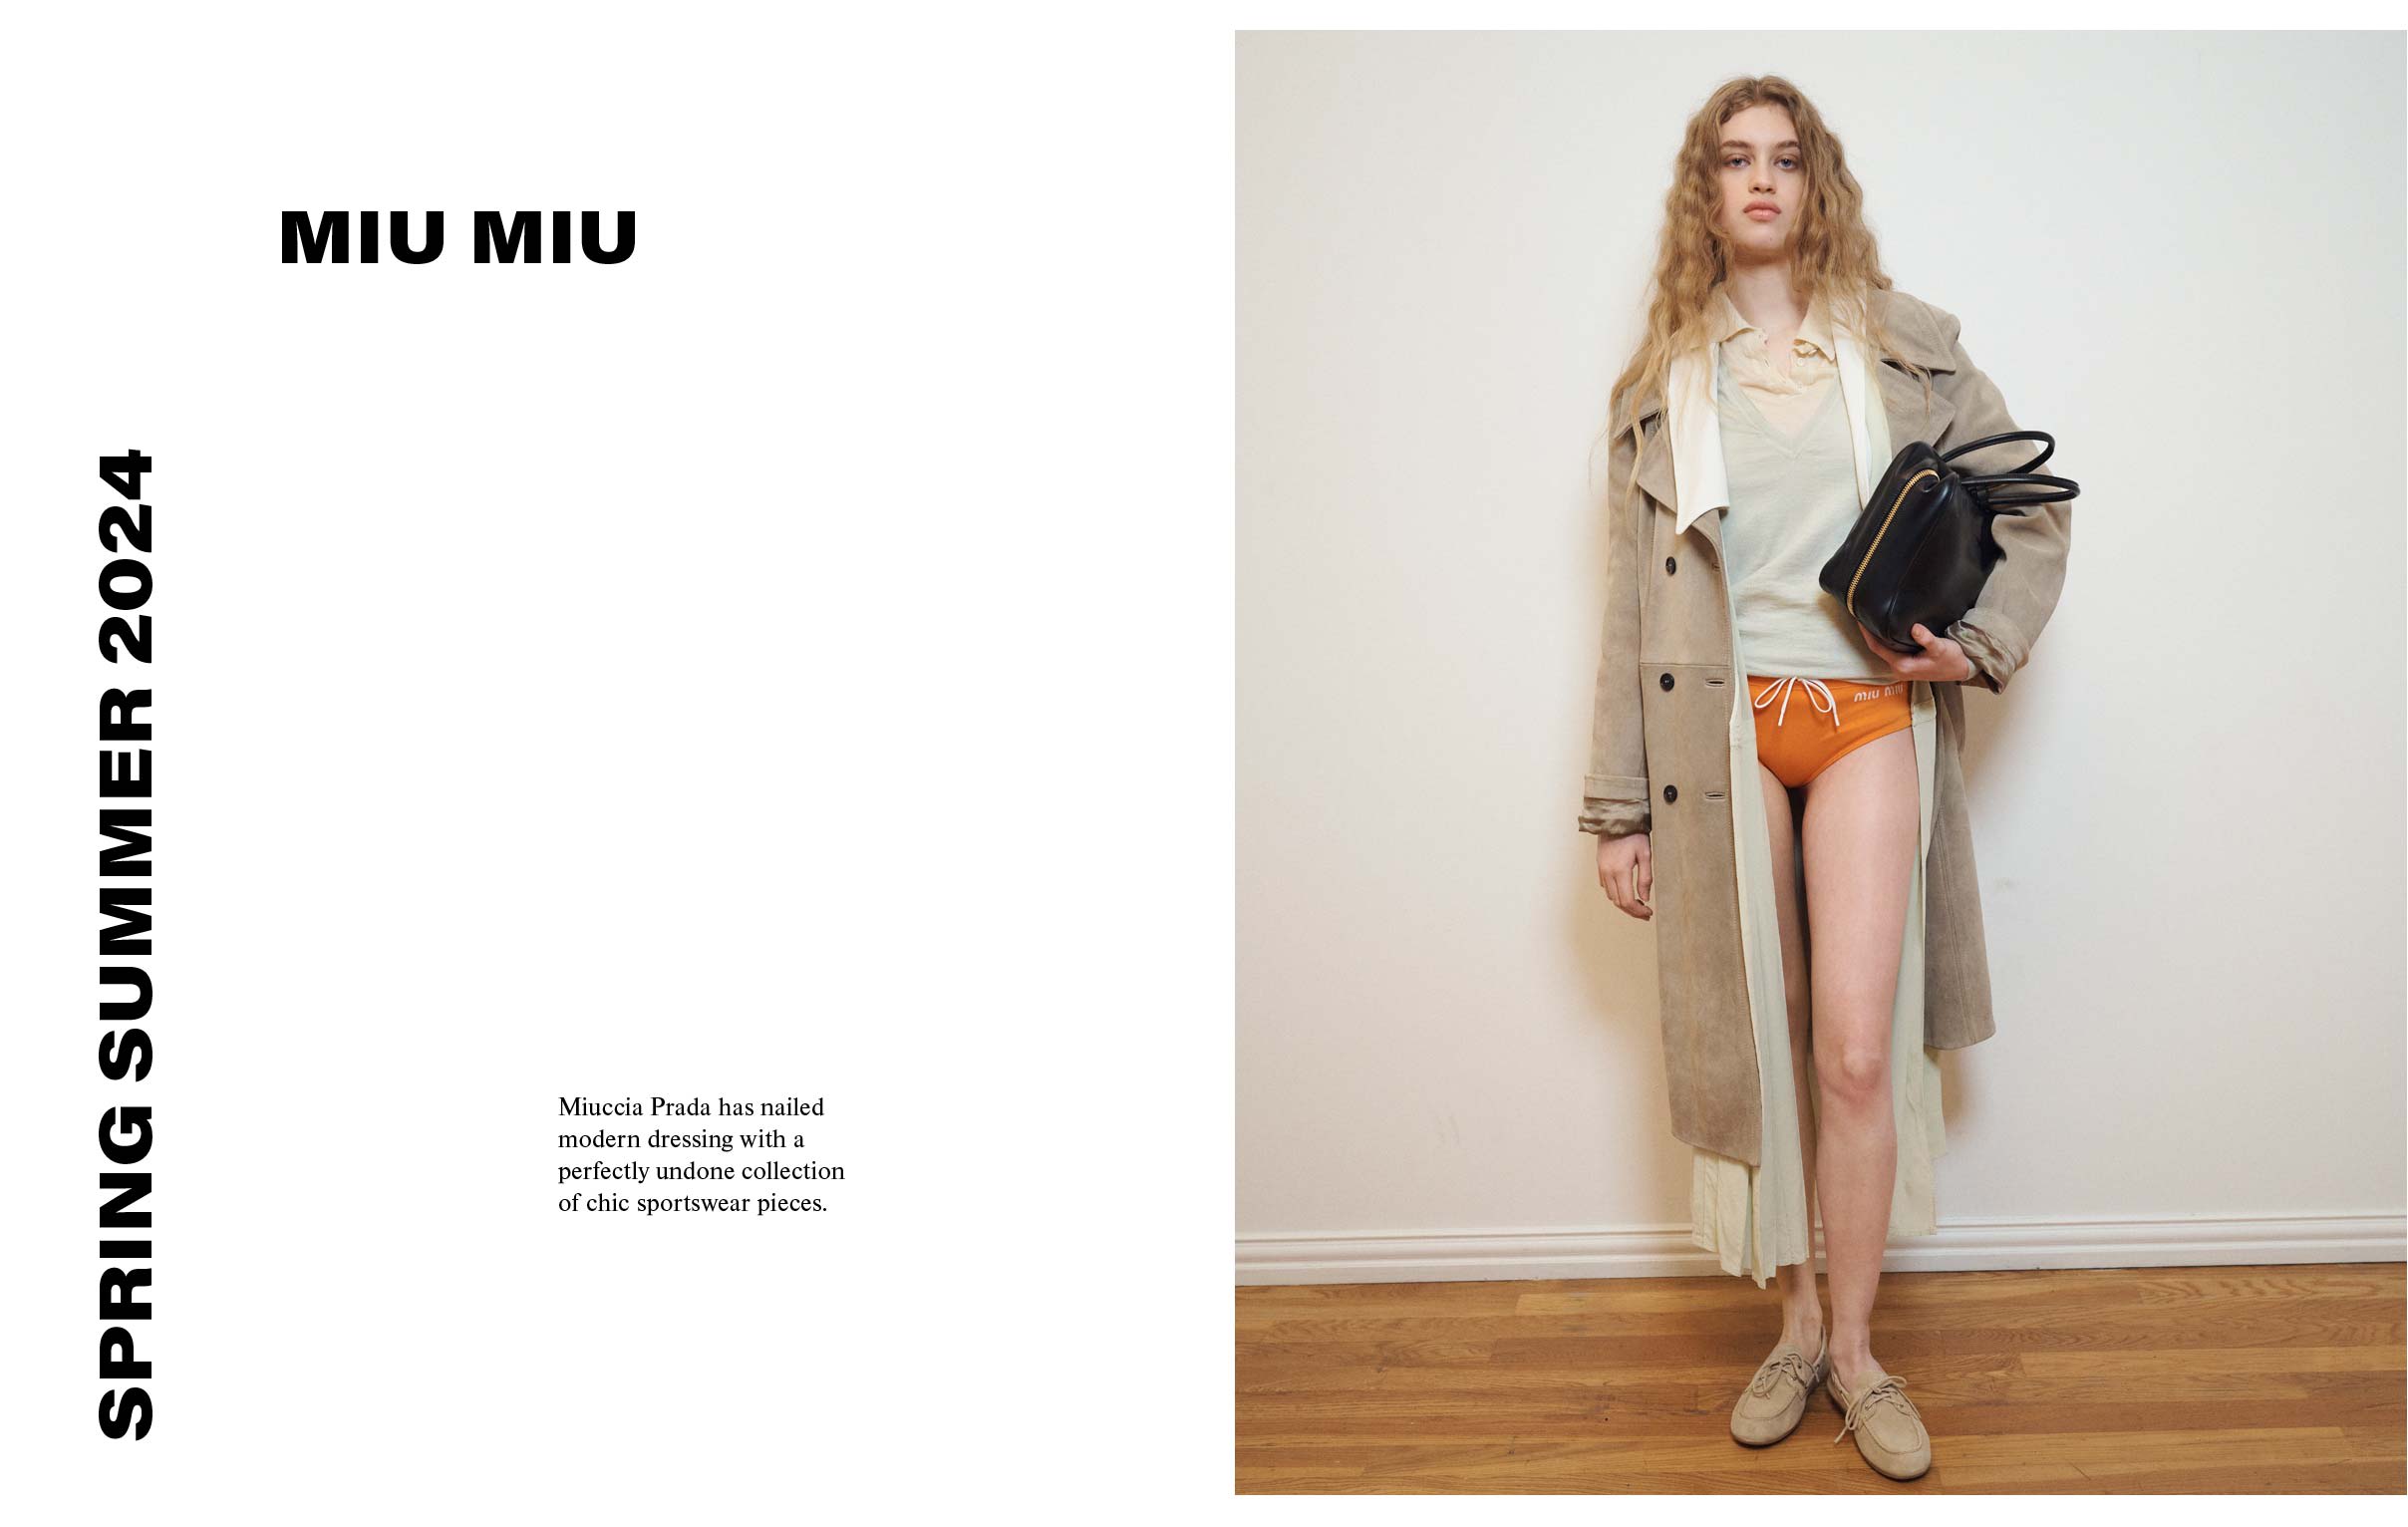 Shop MiuMiu Wool Silk Underwear by Oliviapresents